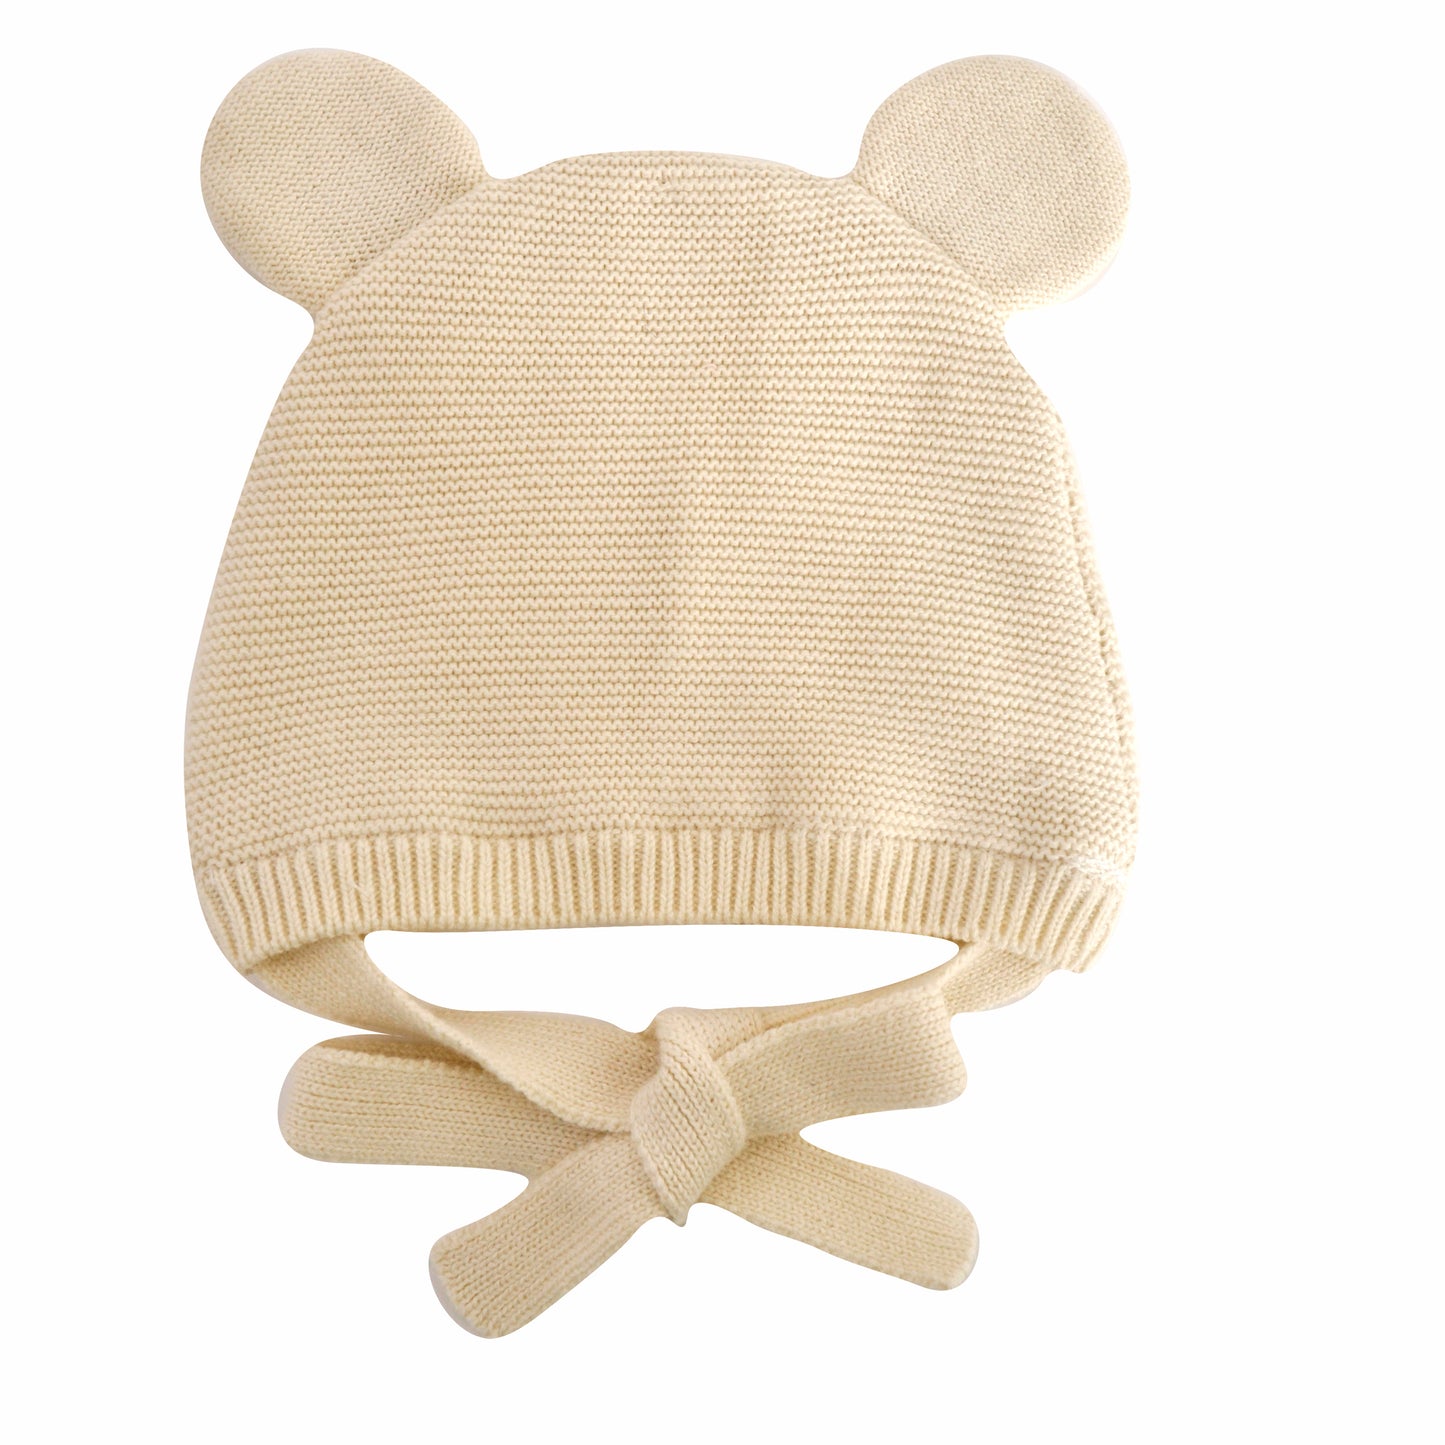 Baby Knitted Bonnet 6-12 Months - Cream Bear